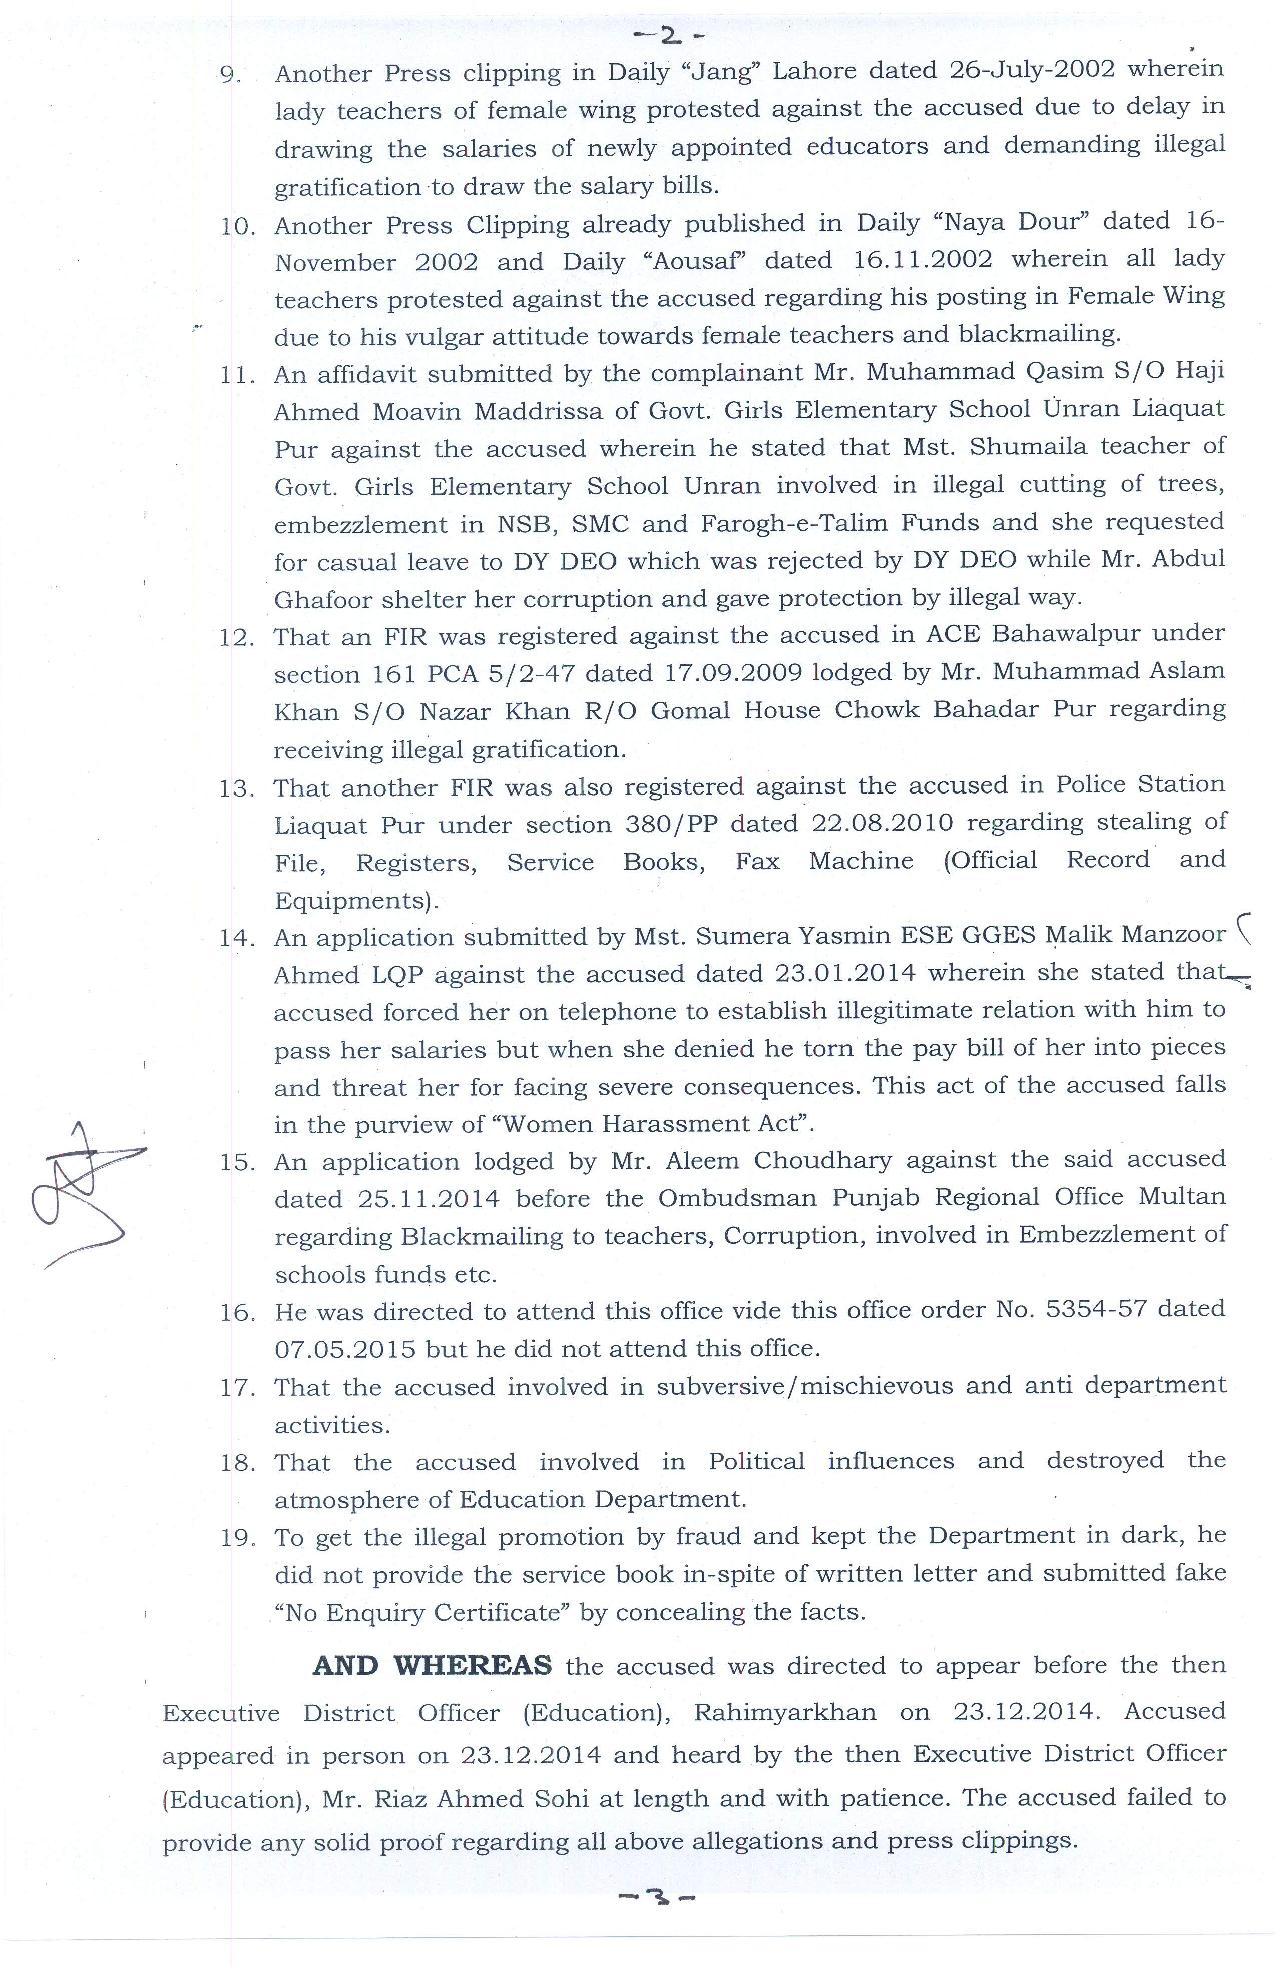 Removal from Service orders of Abdul Ghafoor Senior Clerk